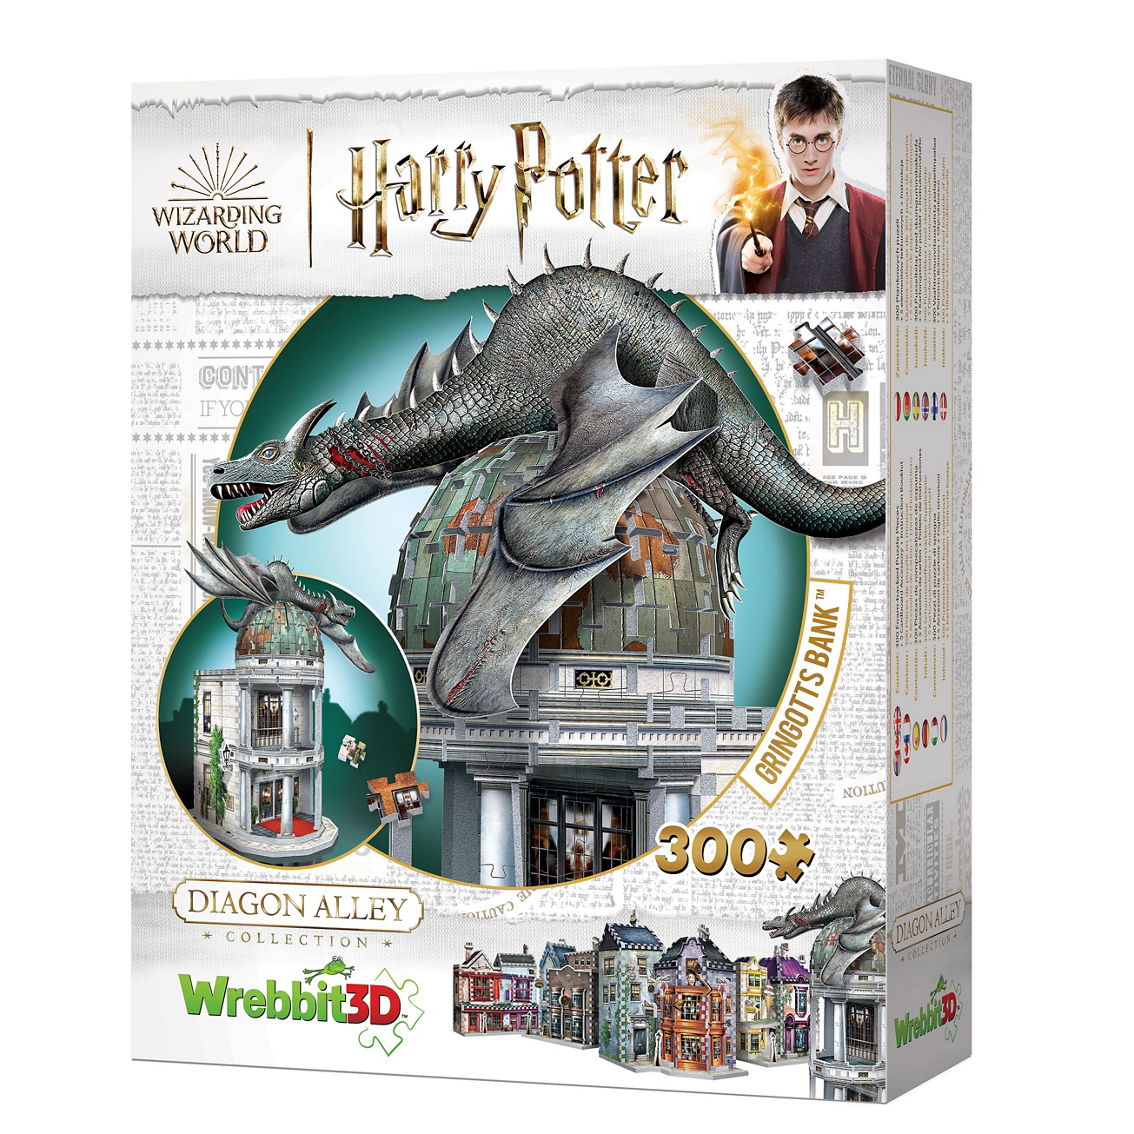 Wrebbit Harry Potter Diagon Alley Collection - Gringotts Bank 3D Puzzle: 300 Pcs - Image 2 of 5